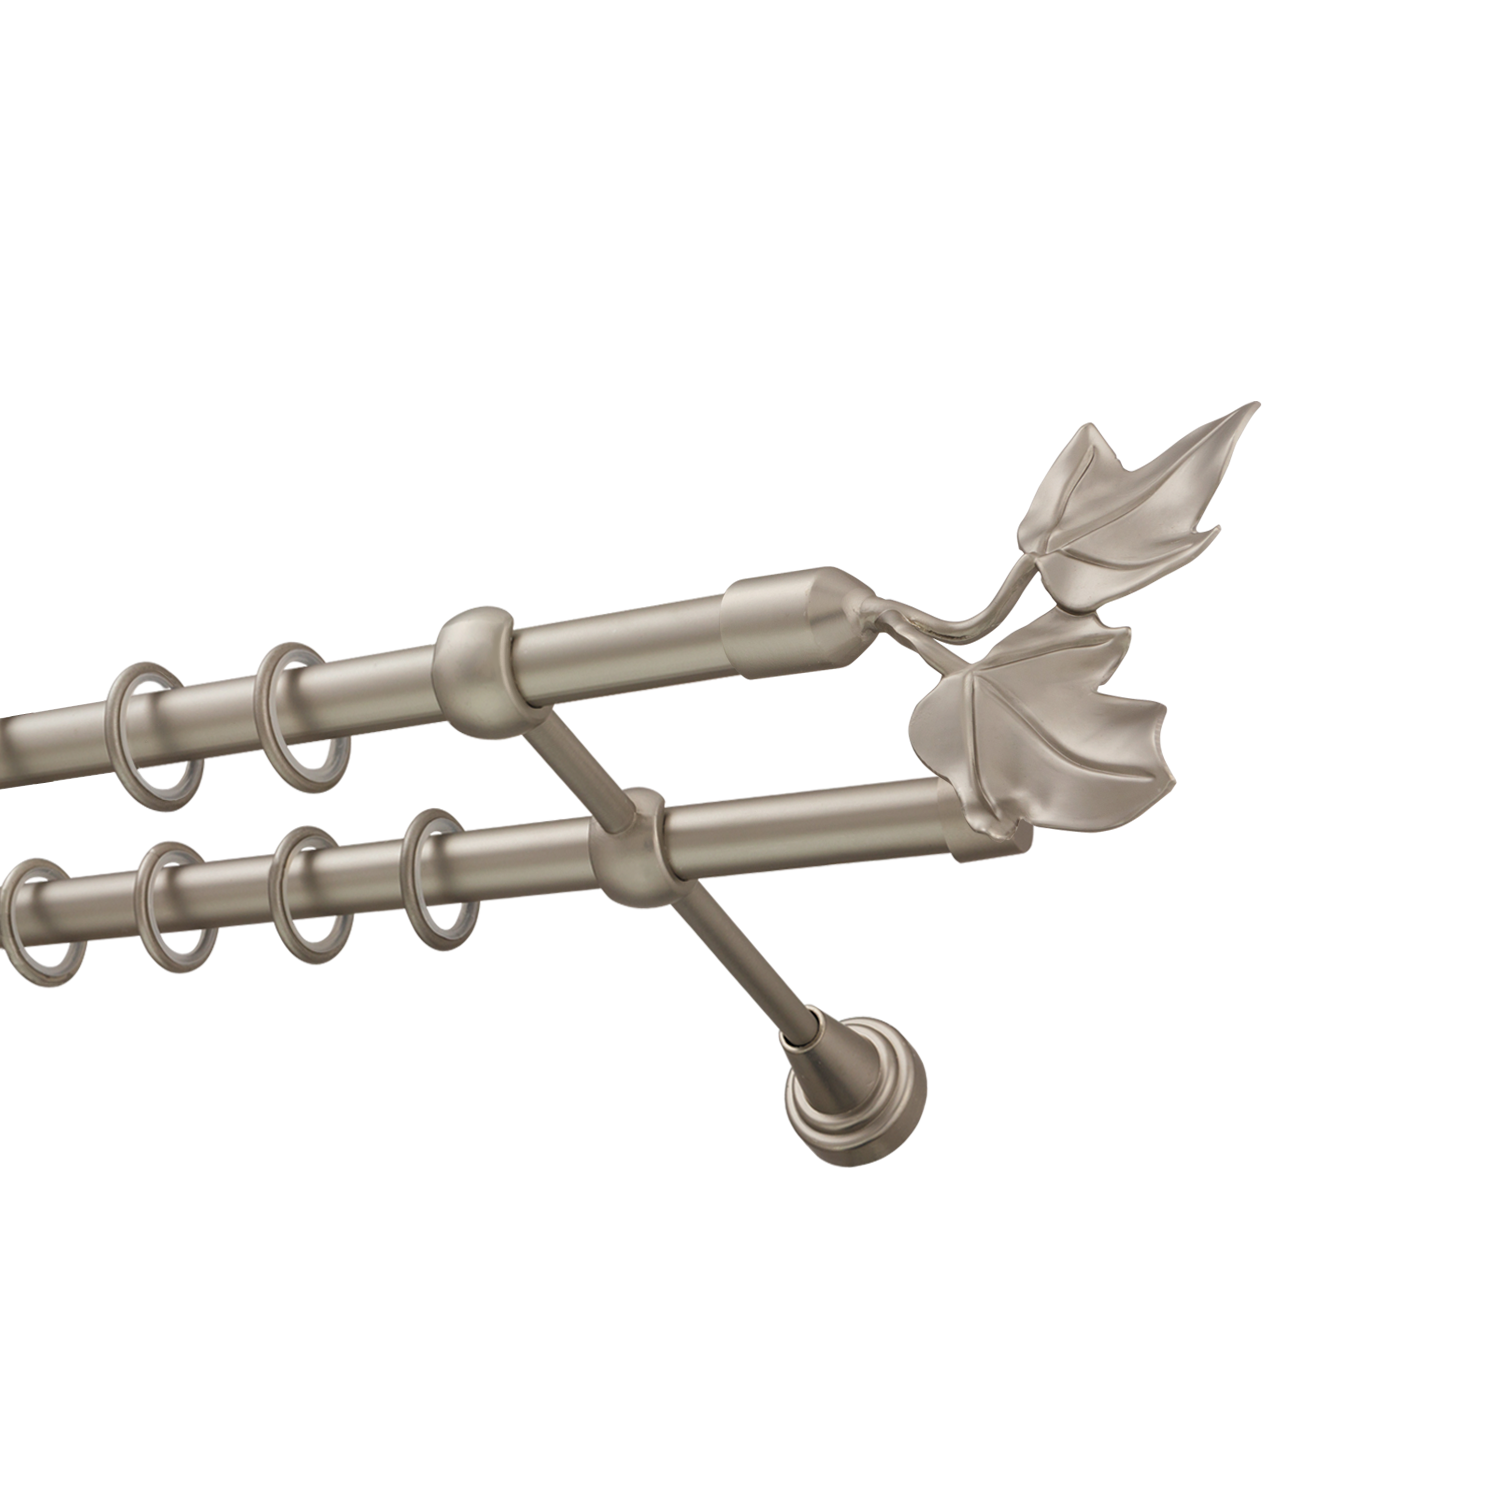 Металлический карниз для штор Листья, двухрядный 16/16 мм, сталь, гладкая штанга, длина 180 см - фото Wikidecor.ru